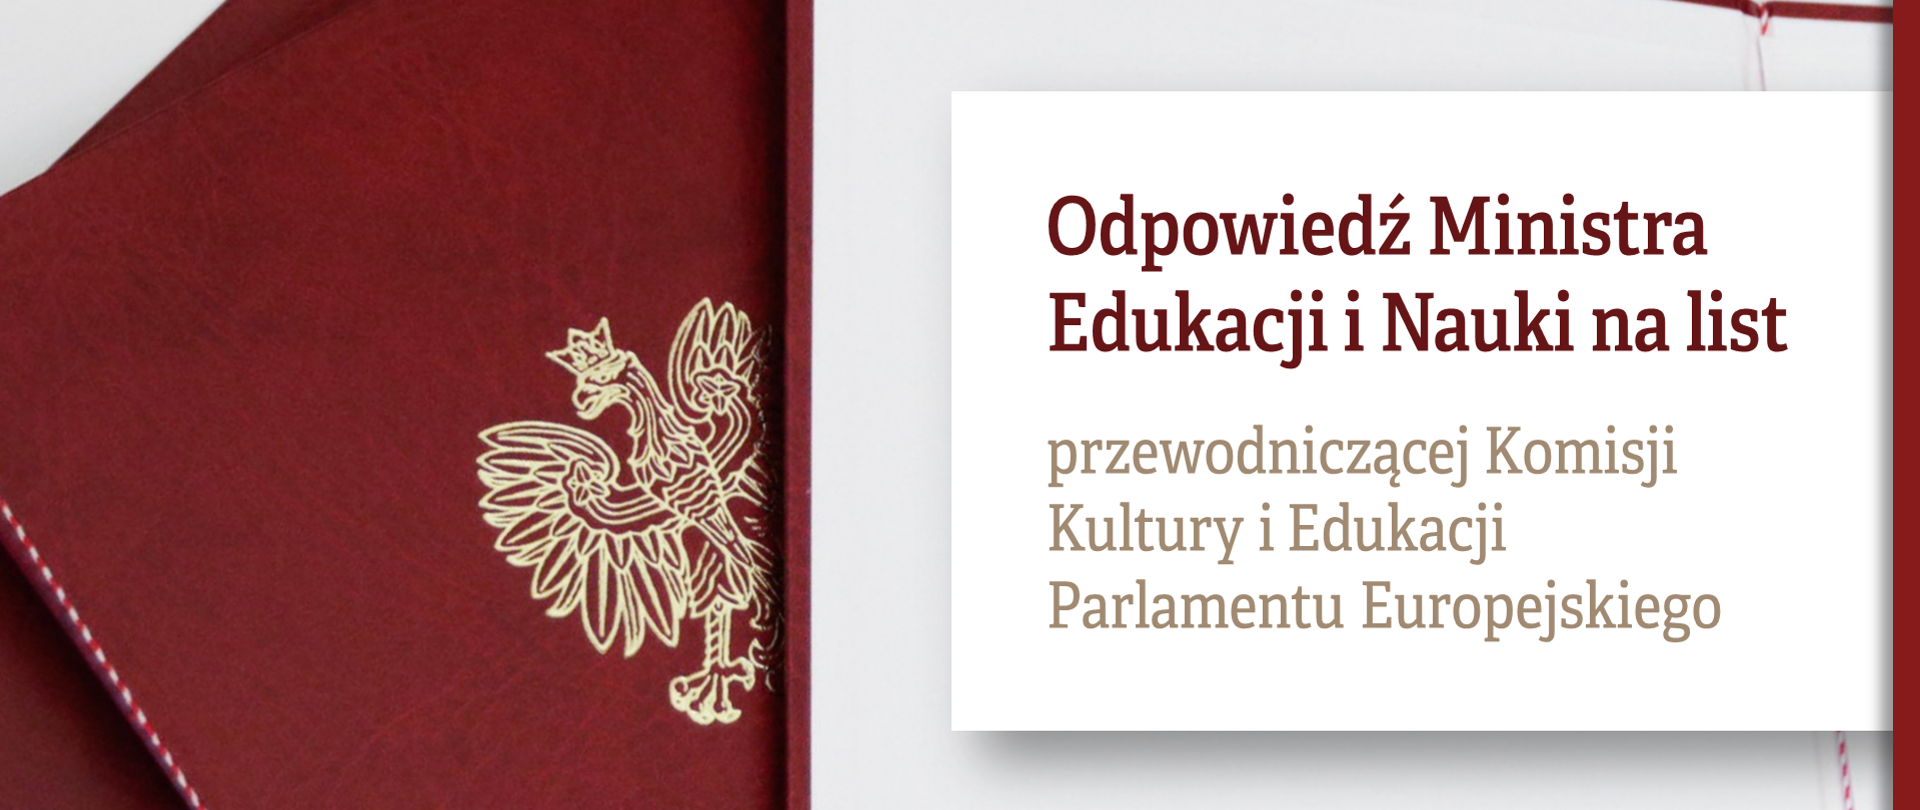 Grafika z tekstem: "Odpowiedź Ministra Edukacji i Nauki na list przewodniczącej Komisji Kultury i Edukacji Parlamentu Europejskiego"